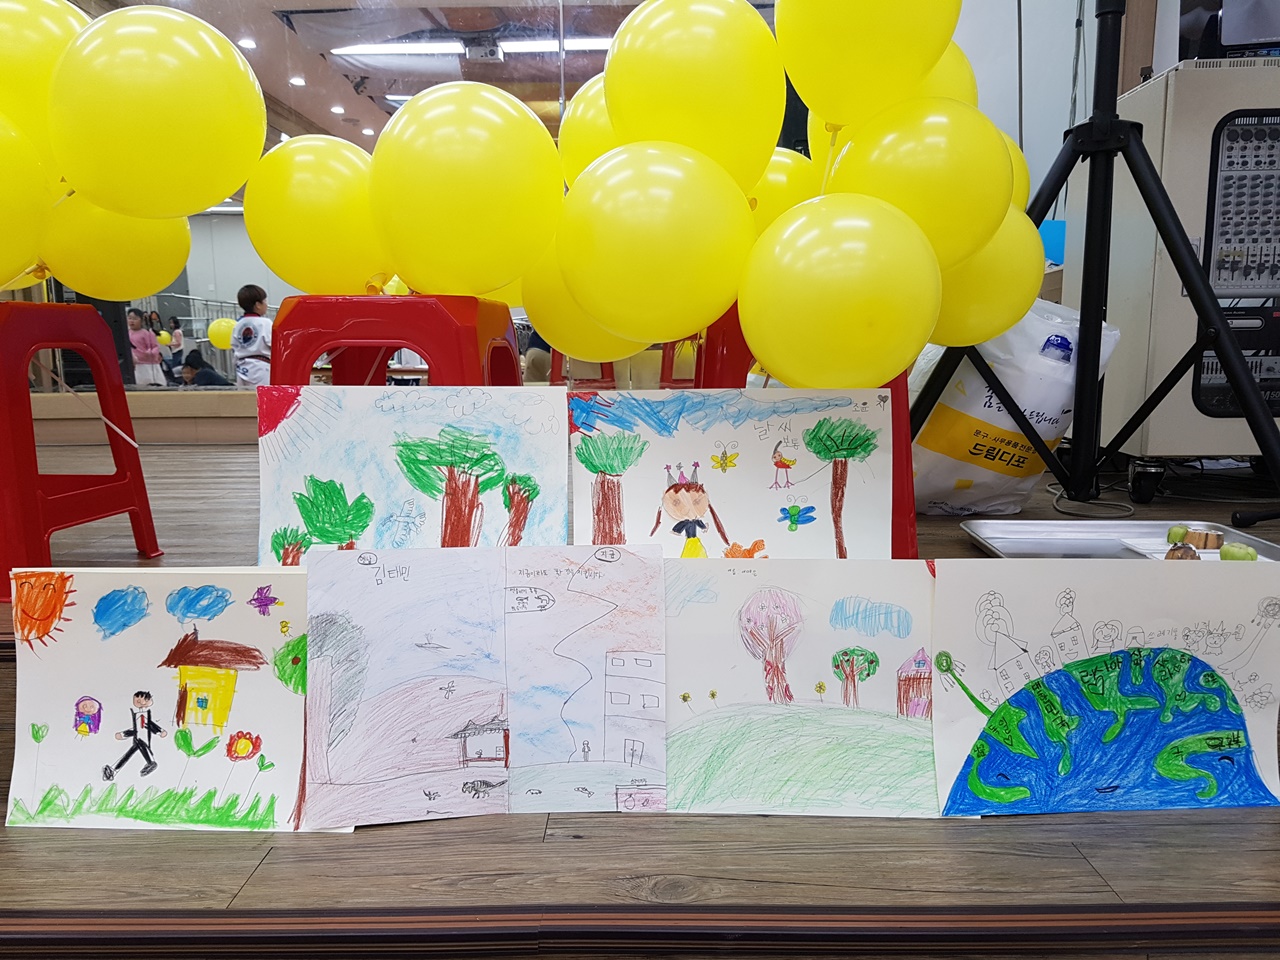 ‘오스카빌 산업폐기물 매립장 반대대책위(아래, 반대위)’는 28일 아파트 단지 내에서 유치부를 포함한 초등학생 100여 명이 참가한 가운데 환경 그림 그리기 대회를 개최했다.